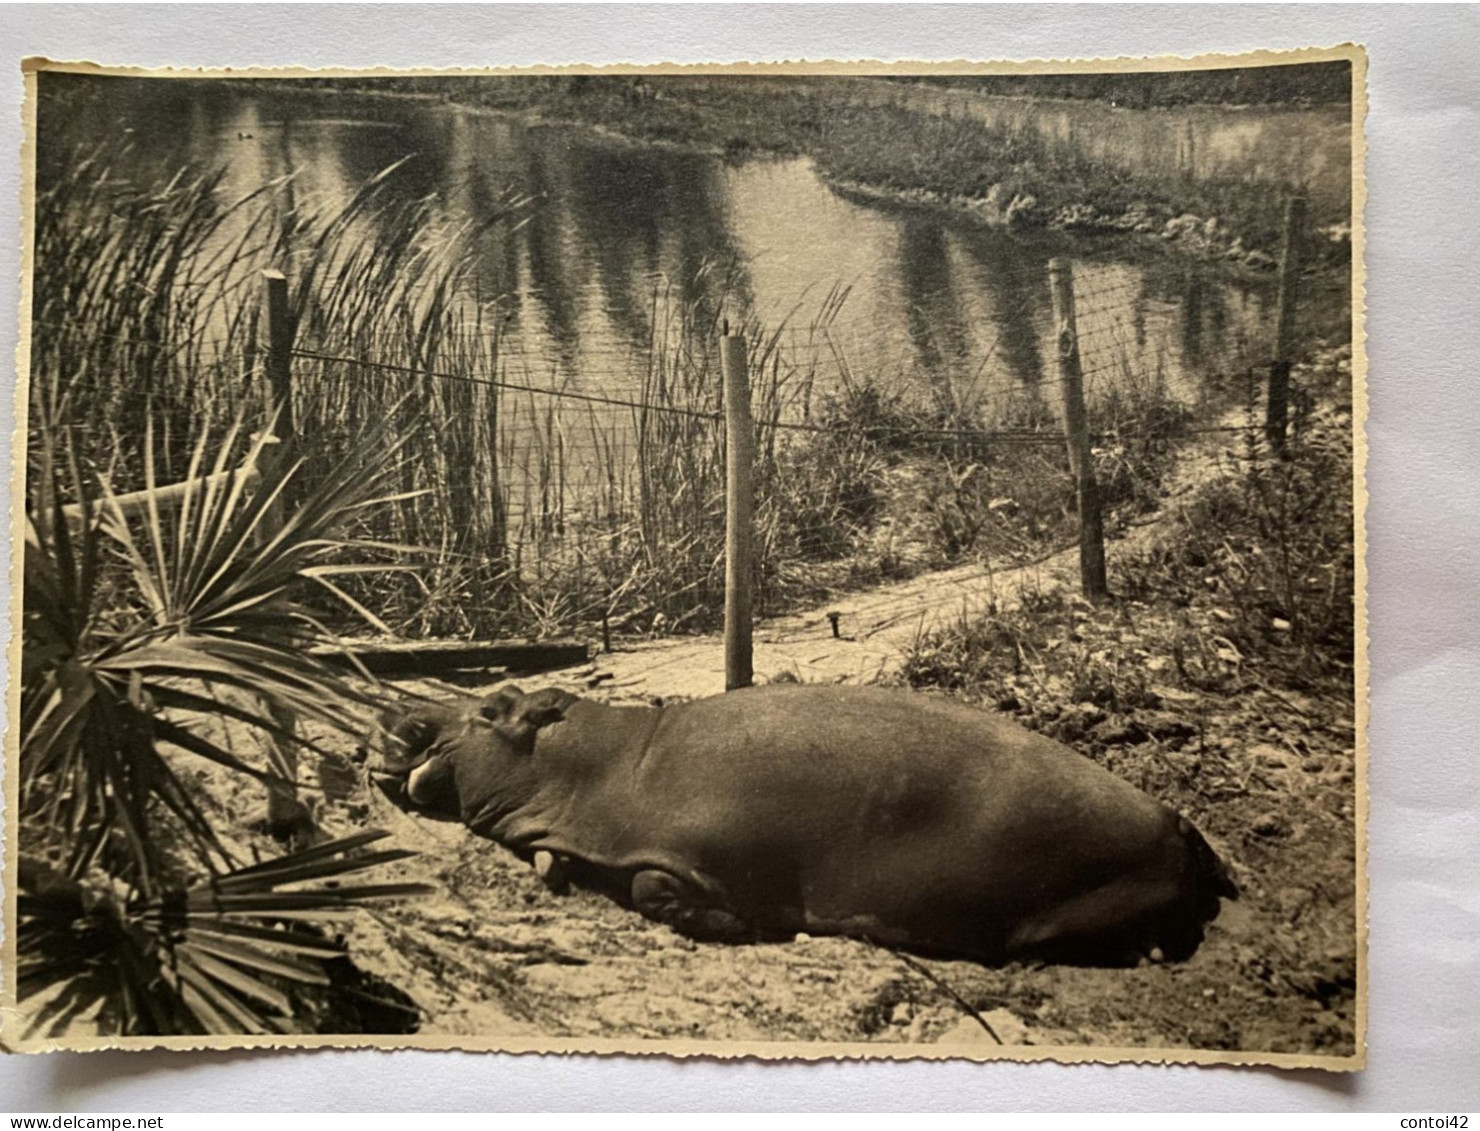 SILVER SPRINGS FLORIDE PHOTOGRAPHIE ORIGINALE VINTAGE 1940 ANIMAUX HIPPOPOTAME ETATS-UNIS AMERIQUE - América